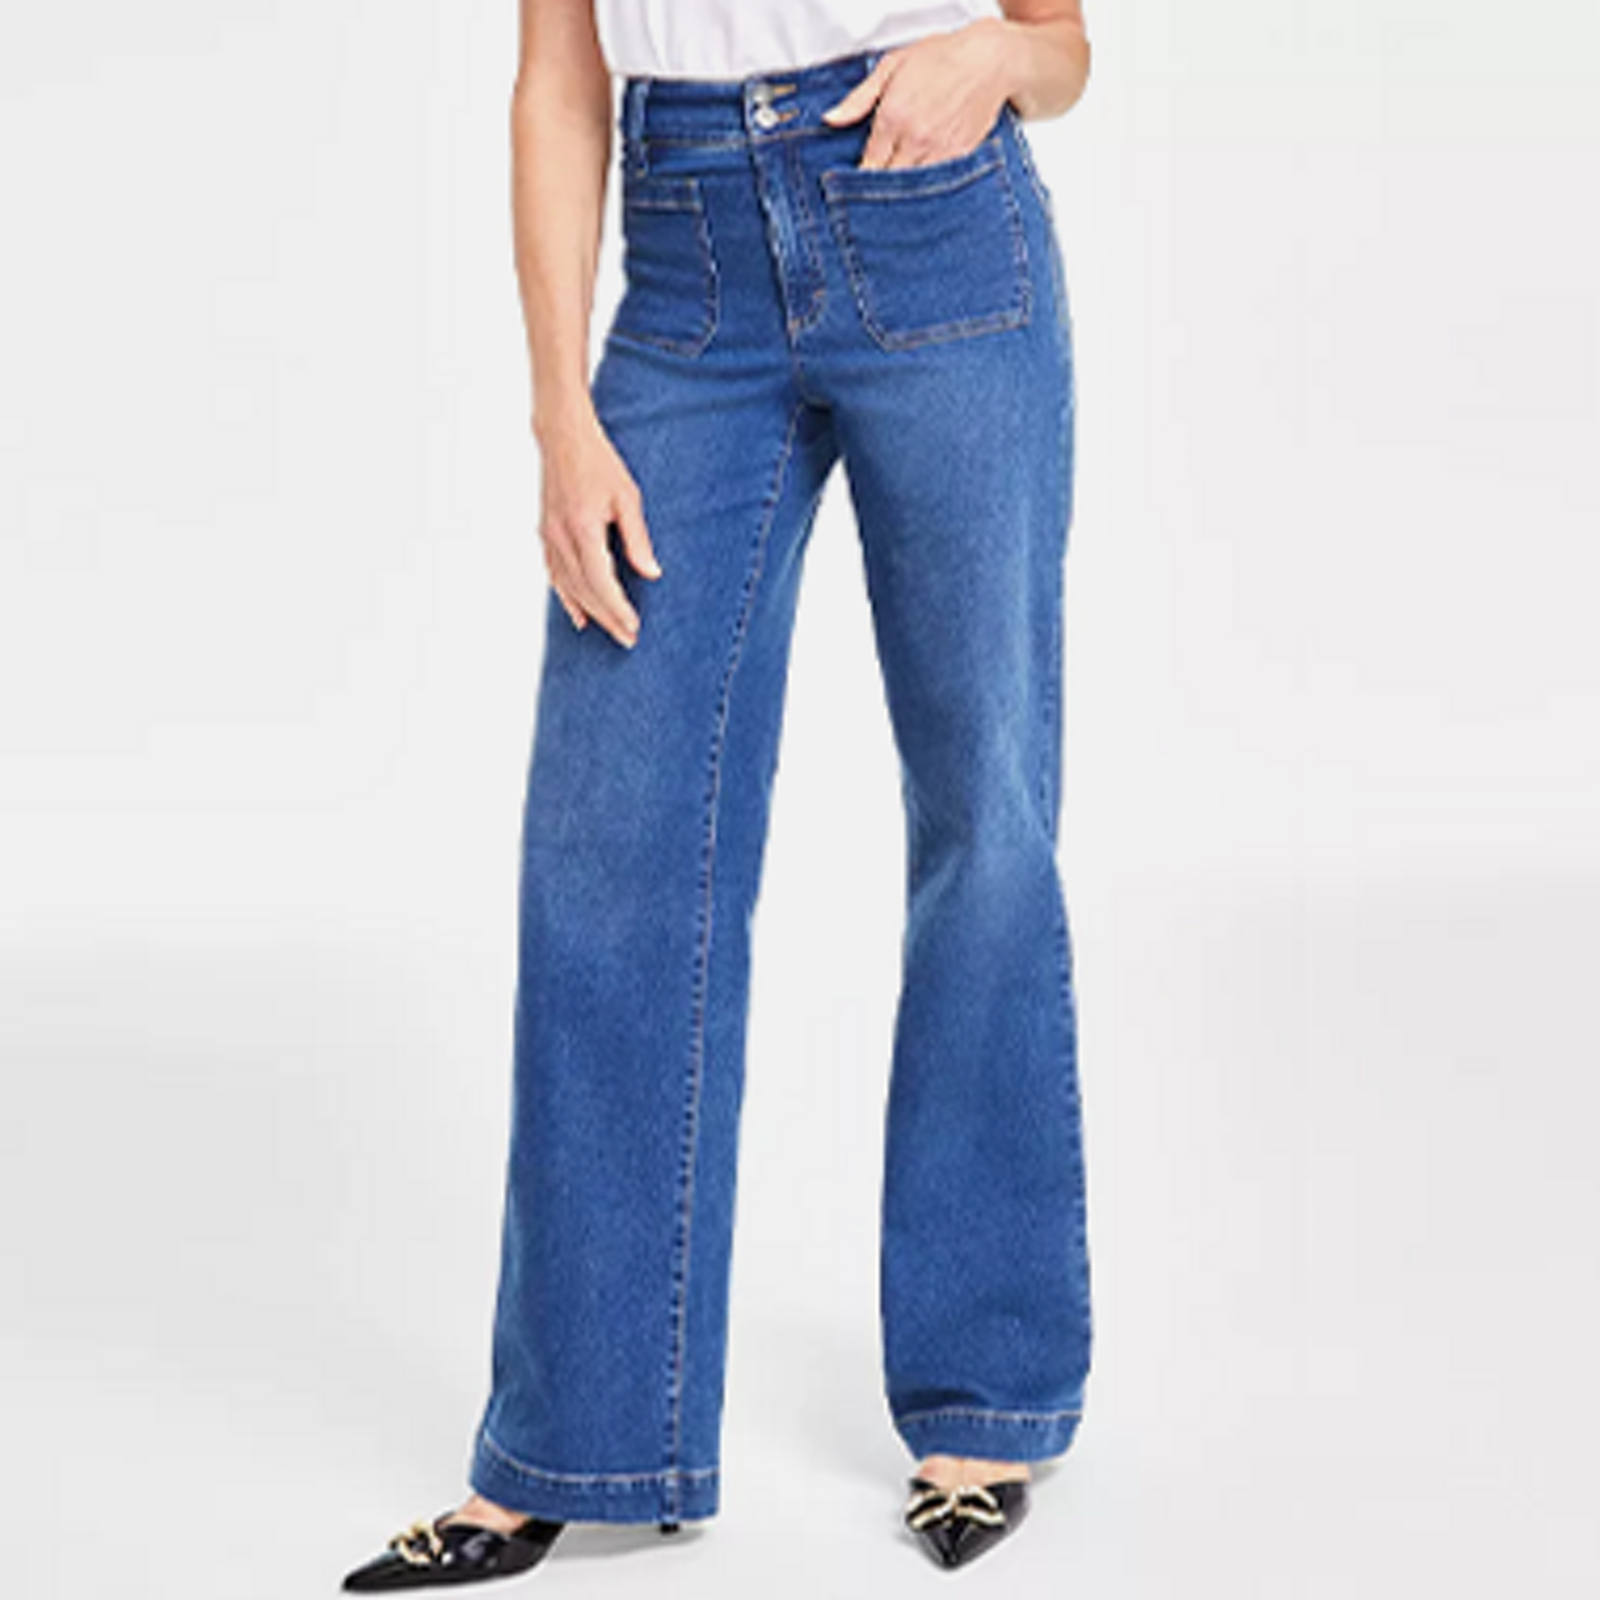 Jeggings Wear To Work Jeans For Women - Macy's